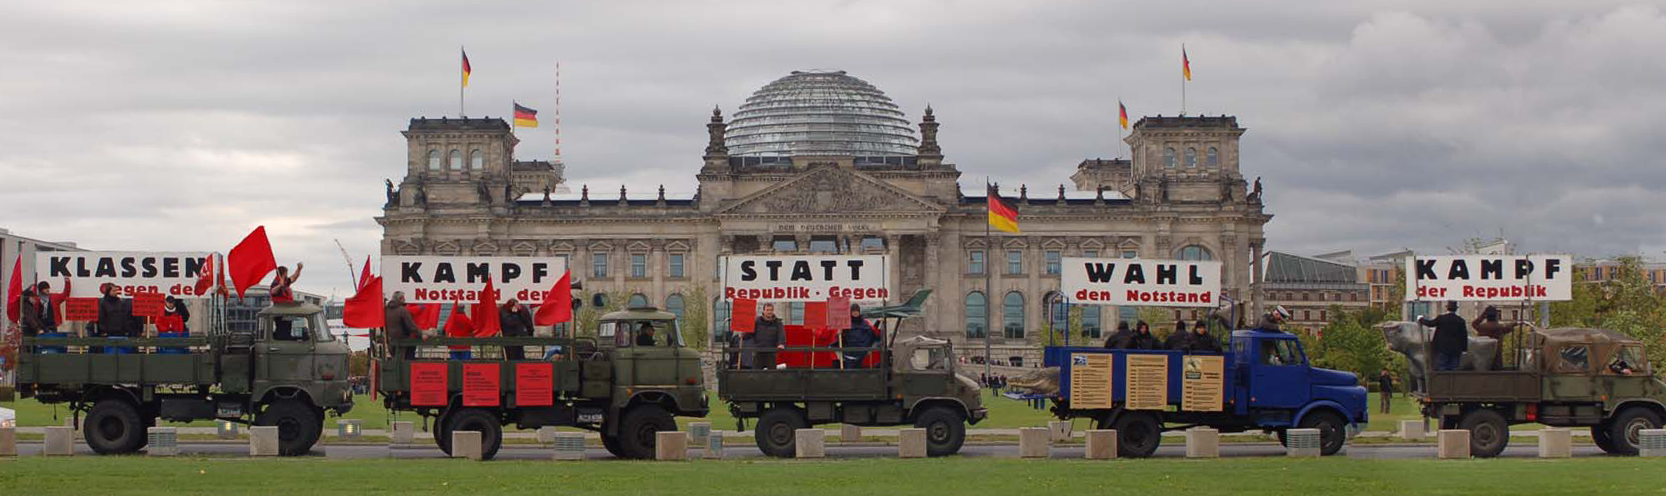 Aktionszug vor dem Reichstag